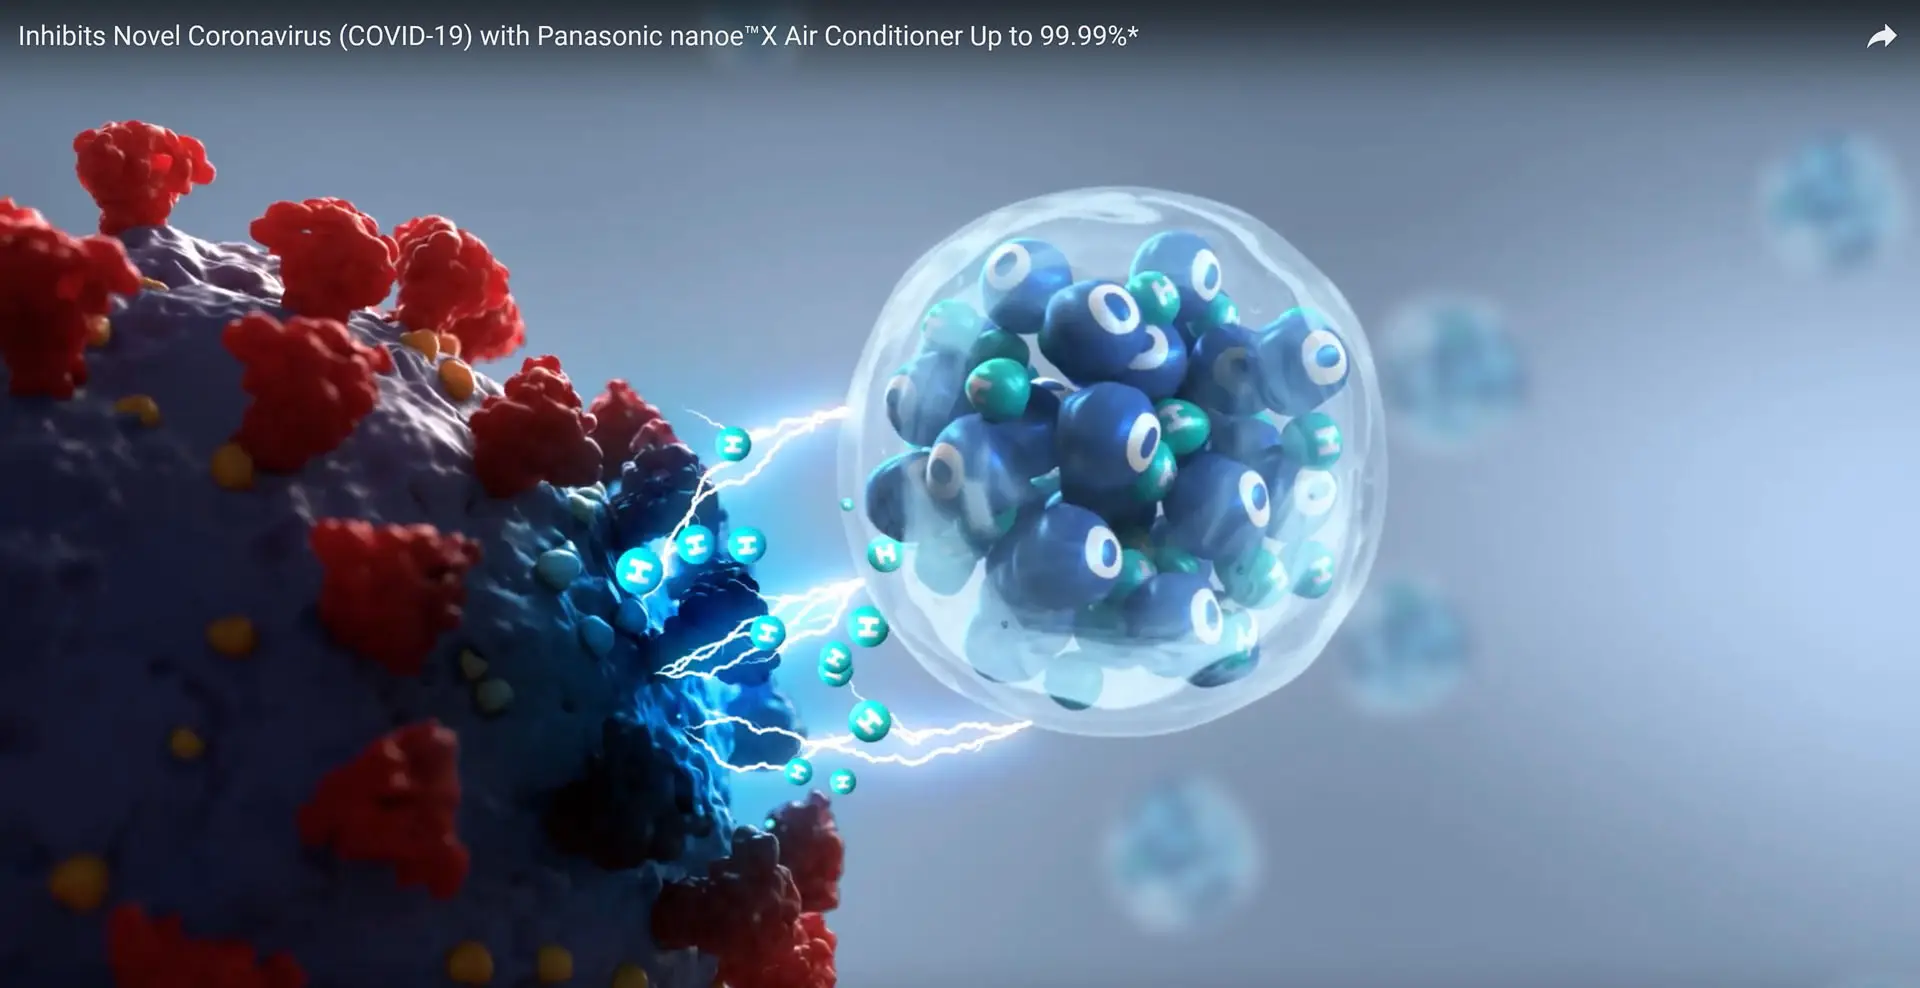 Hiệu quả ức chế vi rút Covid của điều hòa Panasonic trang bị nanoe™ X